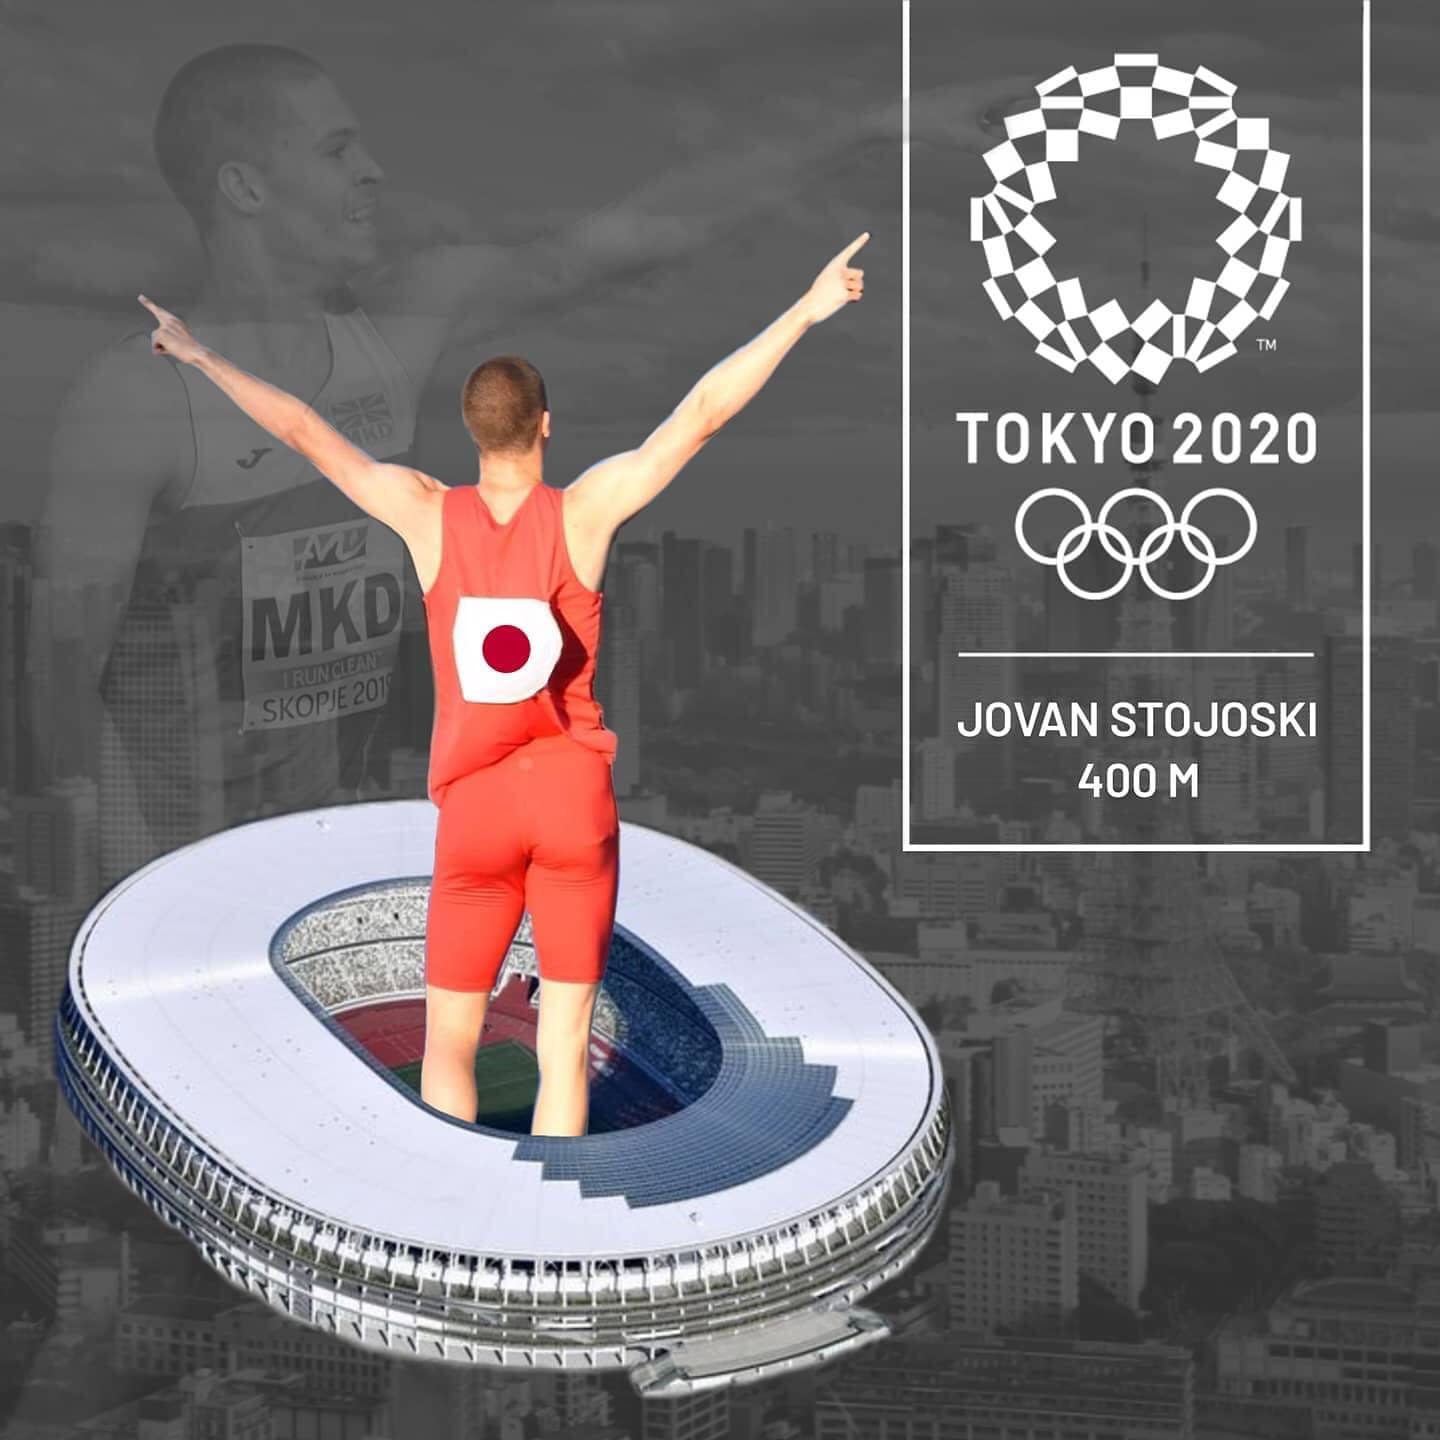 Јован Стојоски – претставник на Олимписките игри во Токио